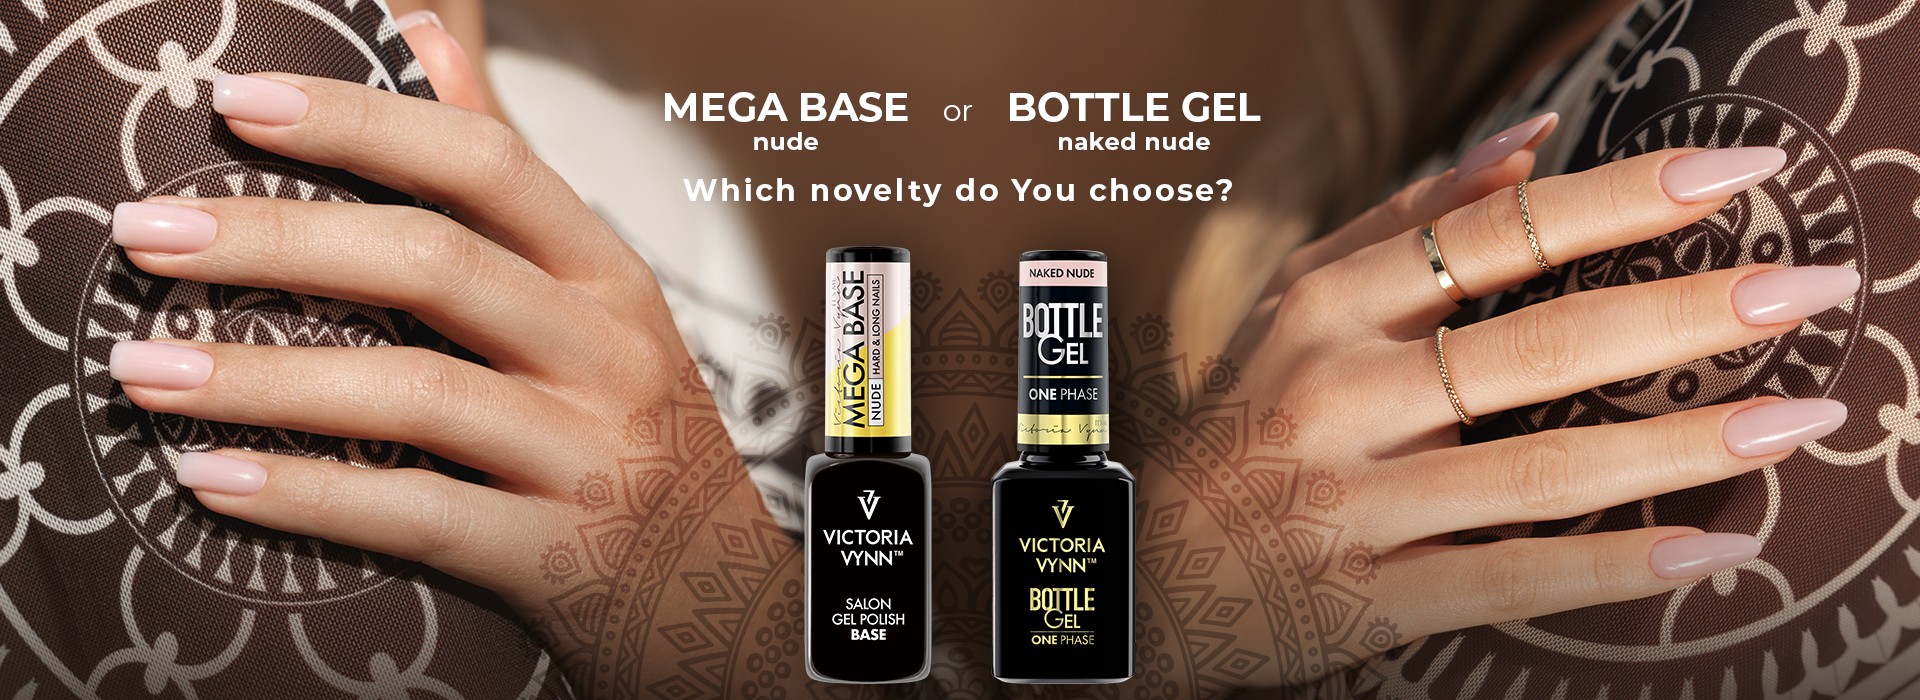 bottle gel_mega base nude